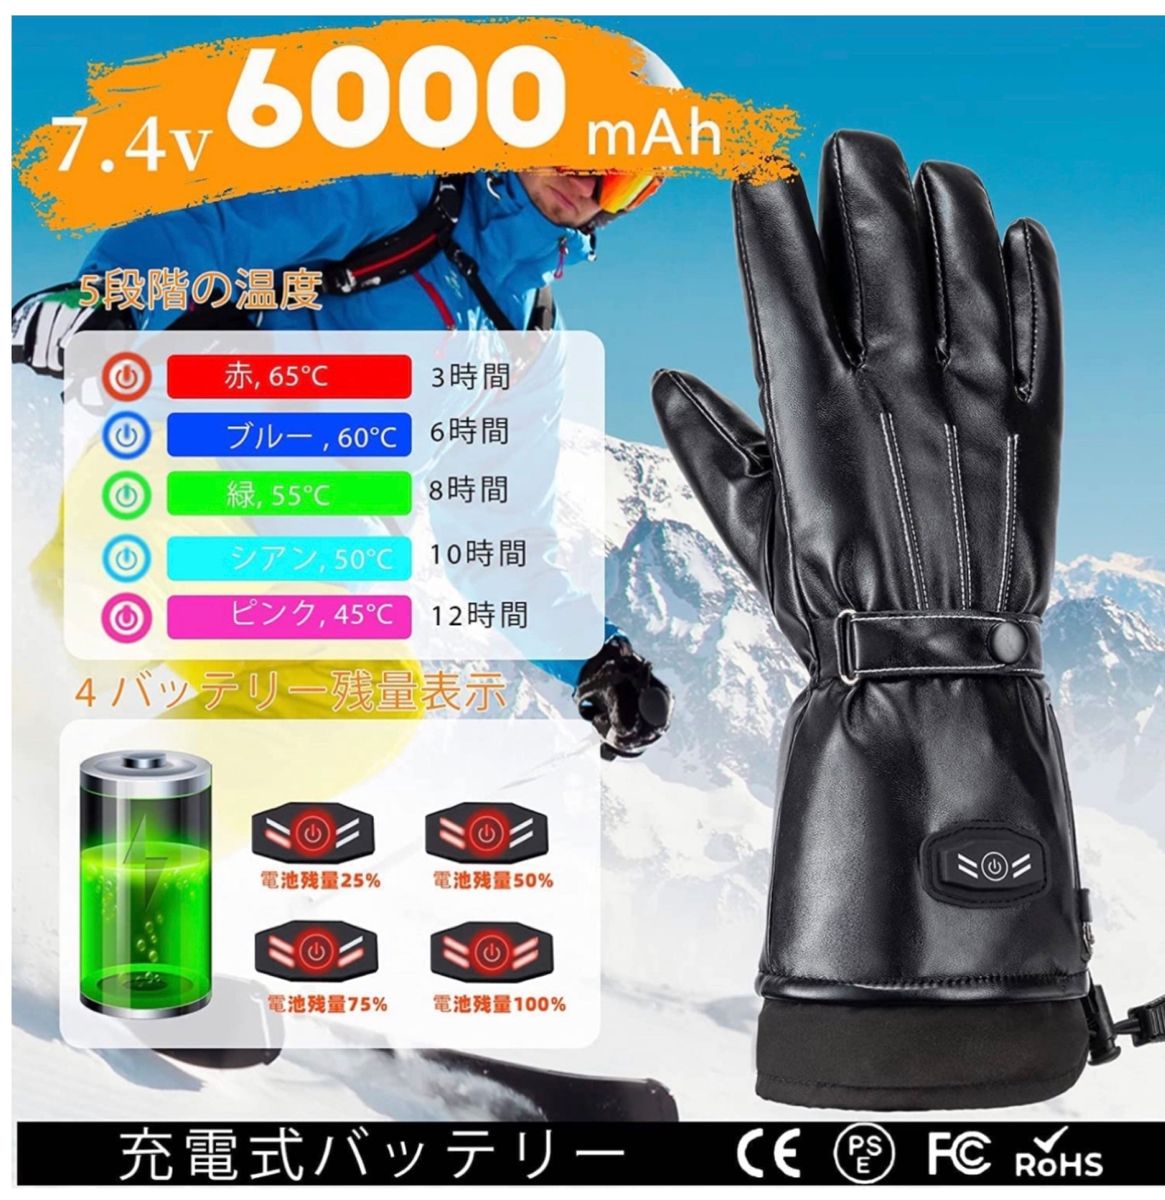 電熱グローブ 皮質 防寒 防水 ヒーター手袋 6000mAh×2個バッテリー付属